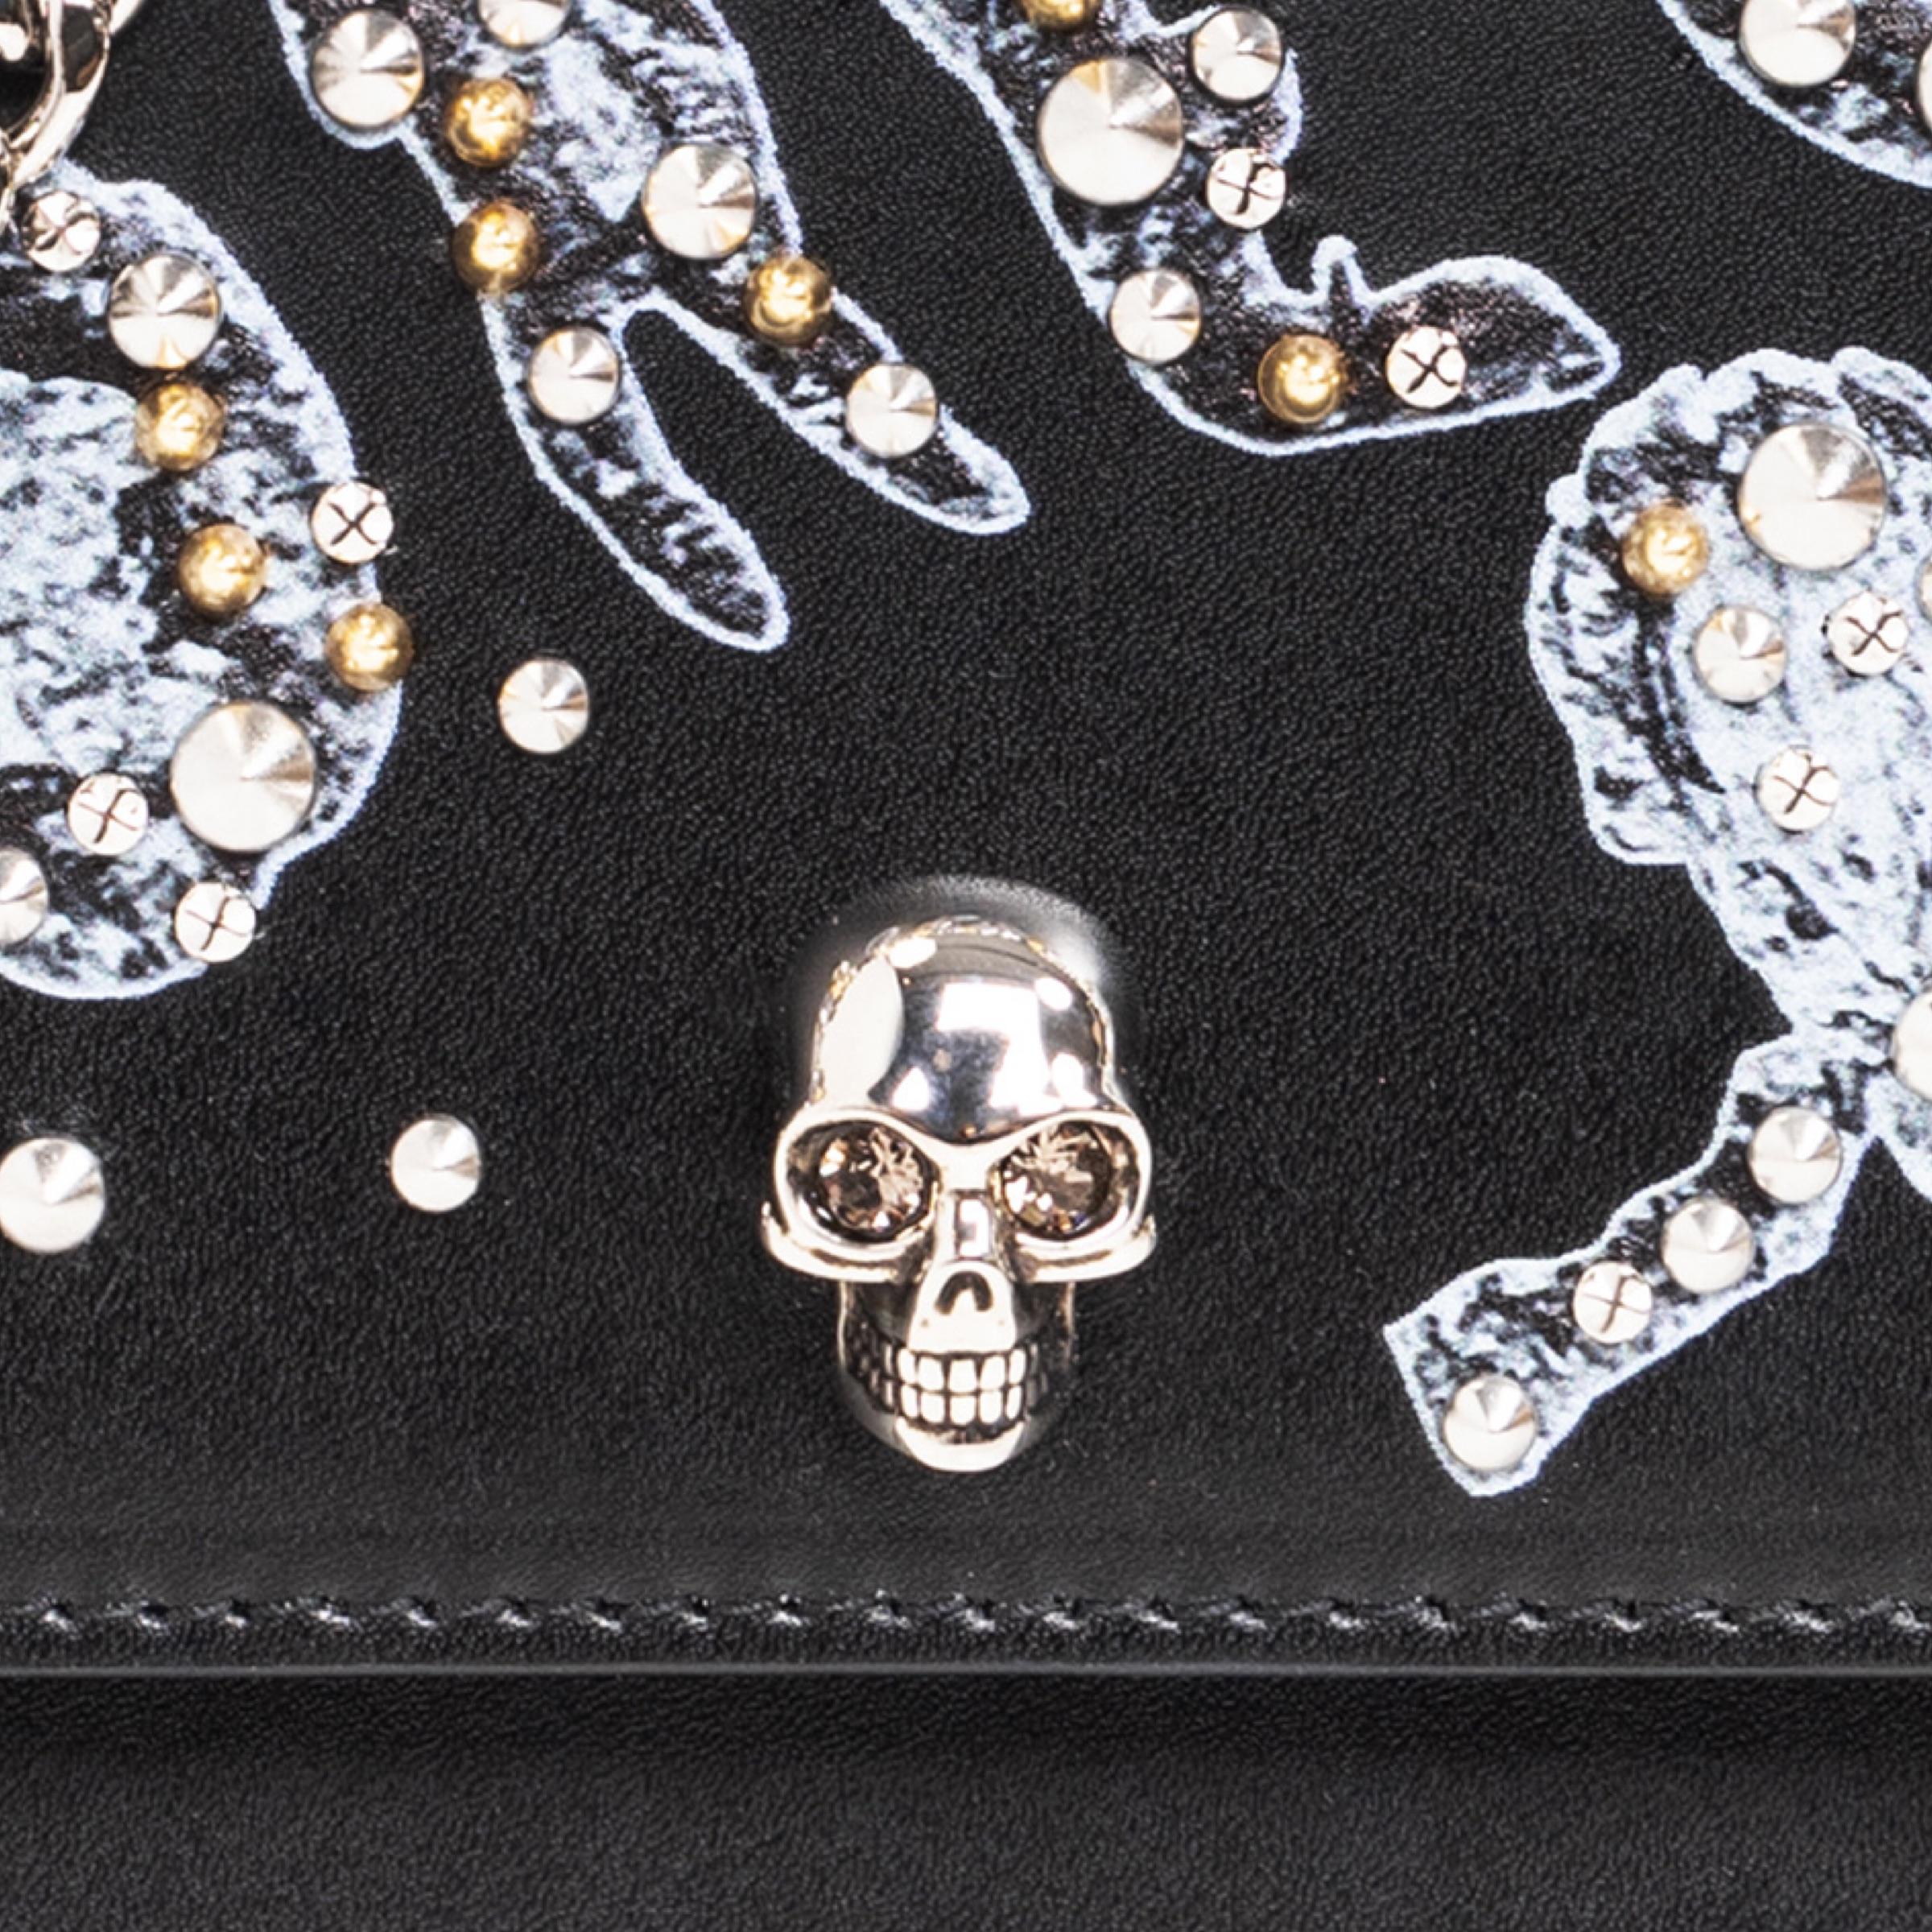 New Alexander McQueen Black Mini Skull Studded Leather Crossbody Bag For Sale 8